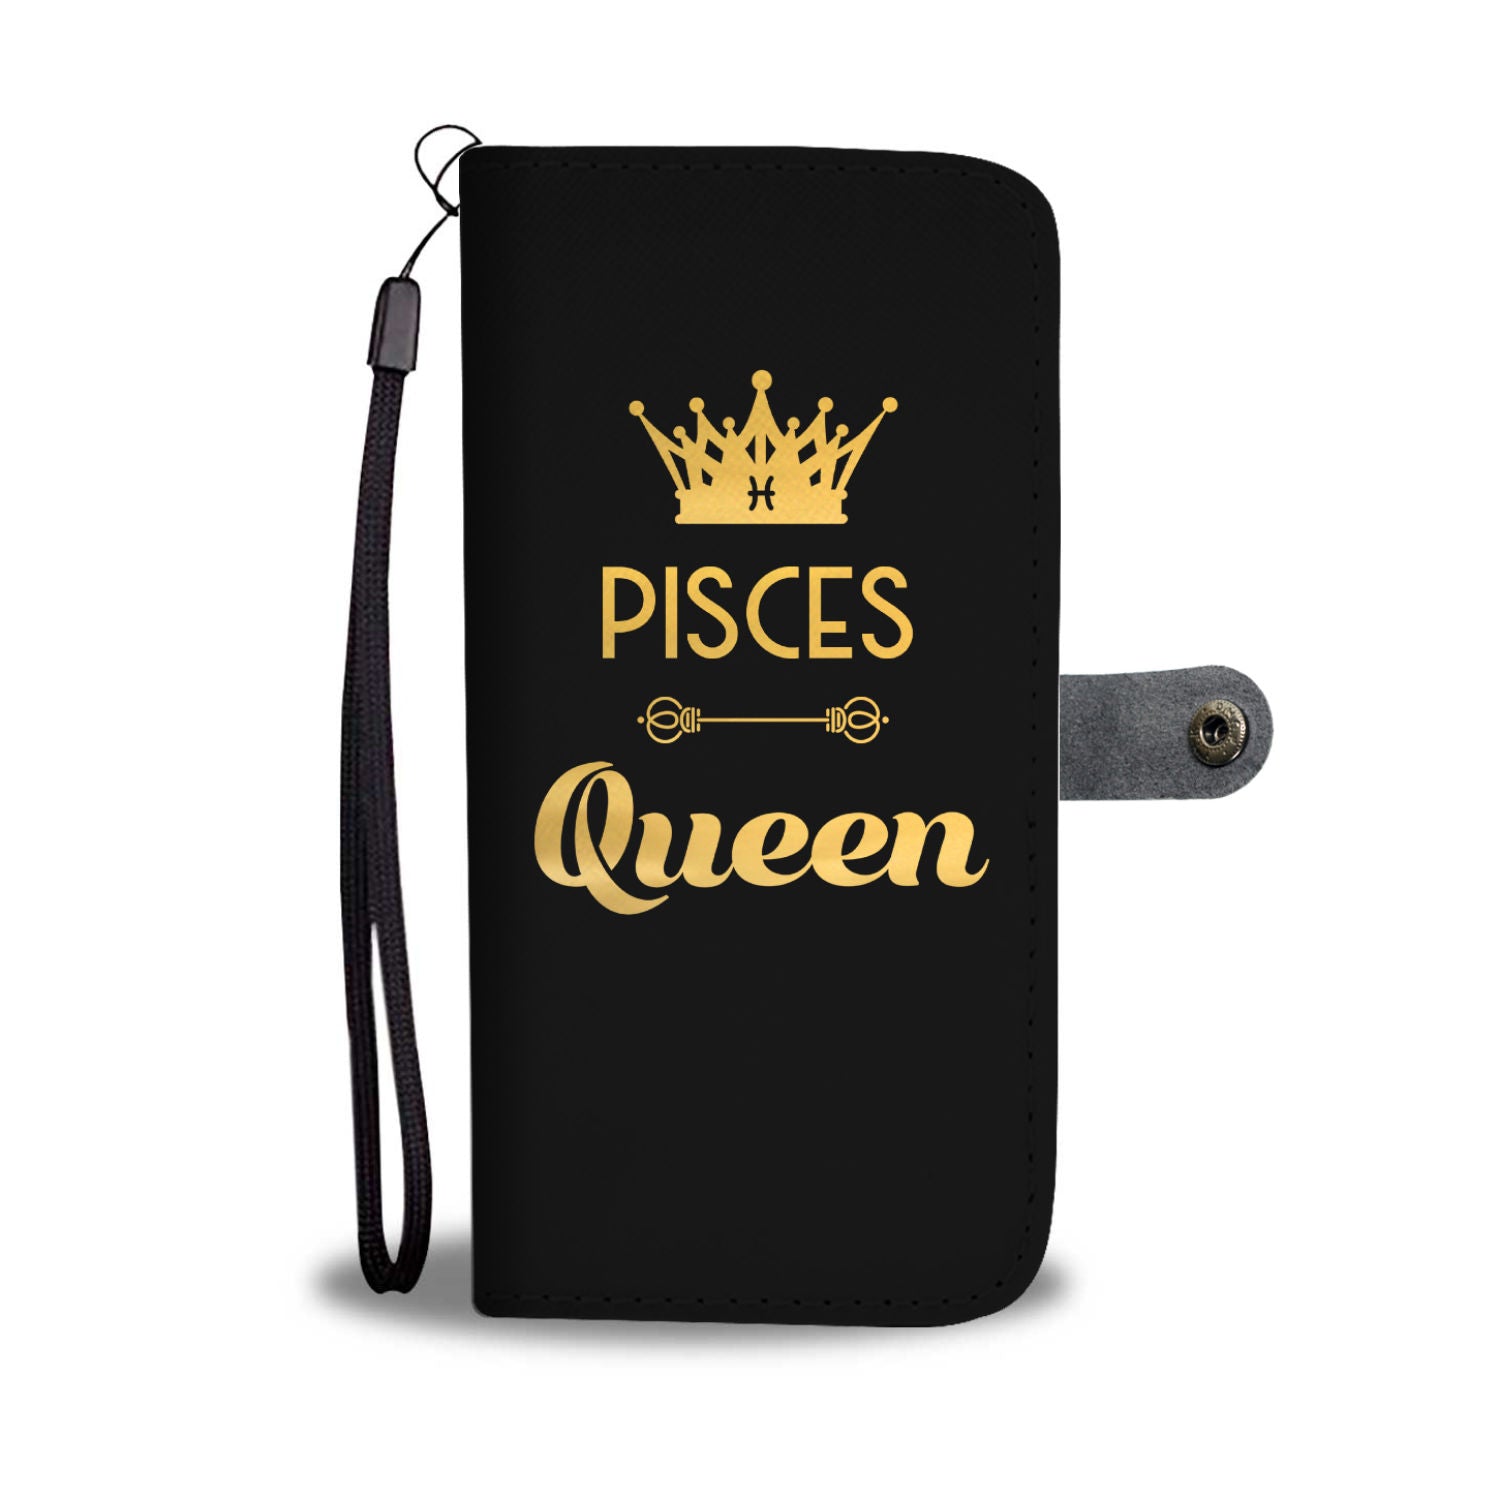 Pisces Queen Phone Wallet